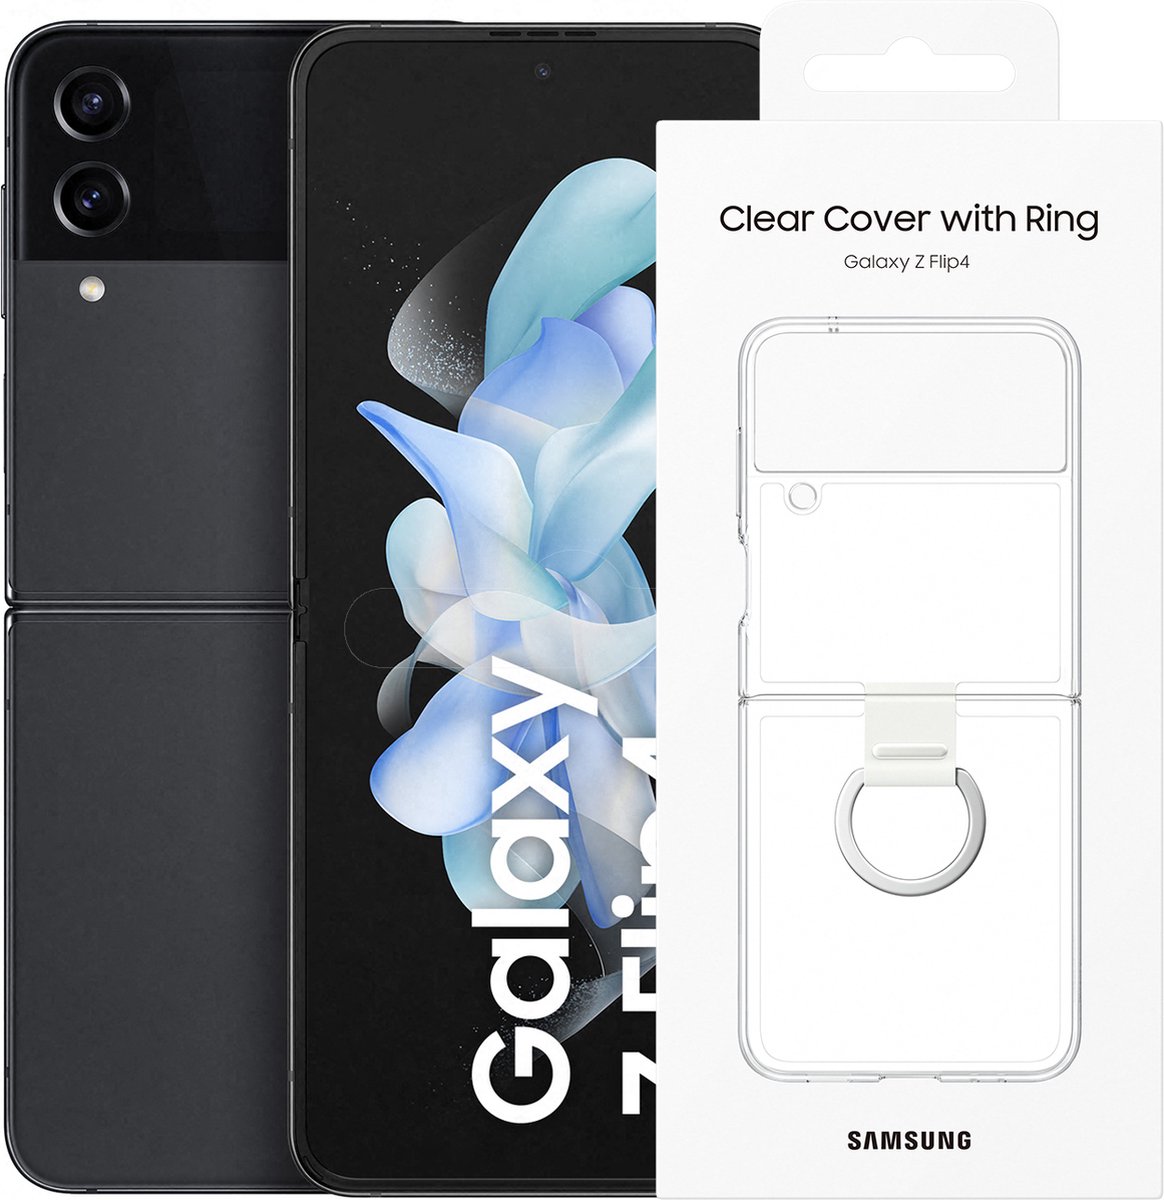 trek de wol over de ogen Buitensporig heb vertrouwen Samsung Galaxy Z Flip 4 - 128GB - 5G - Graphite - met Clear Cover met ring  | bol.com